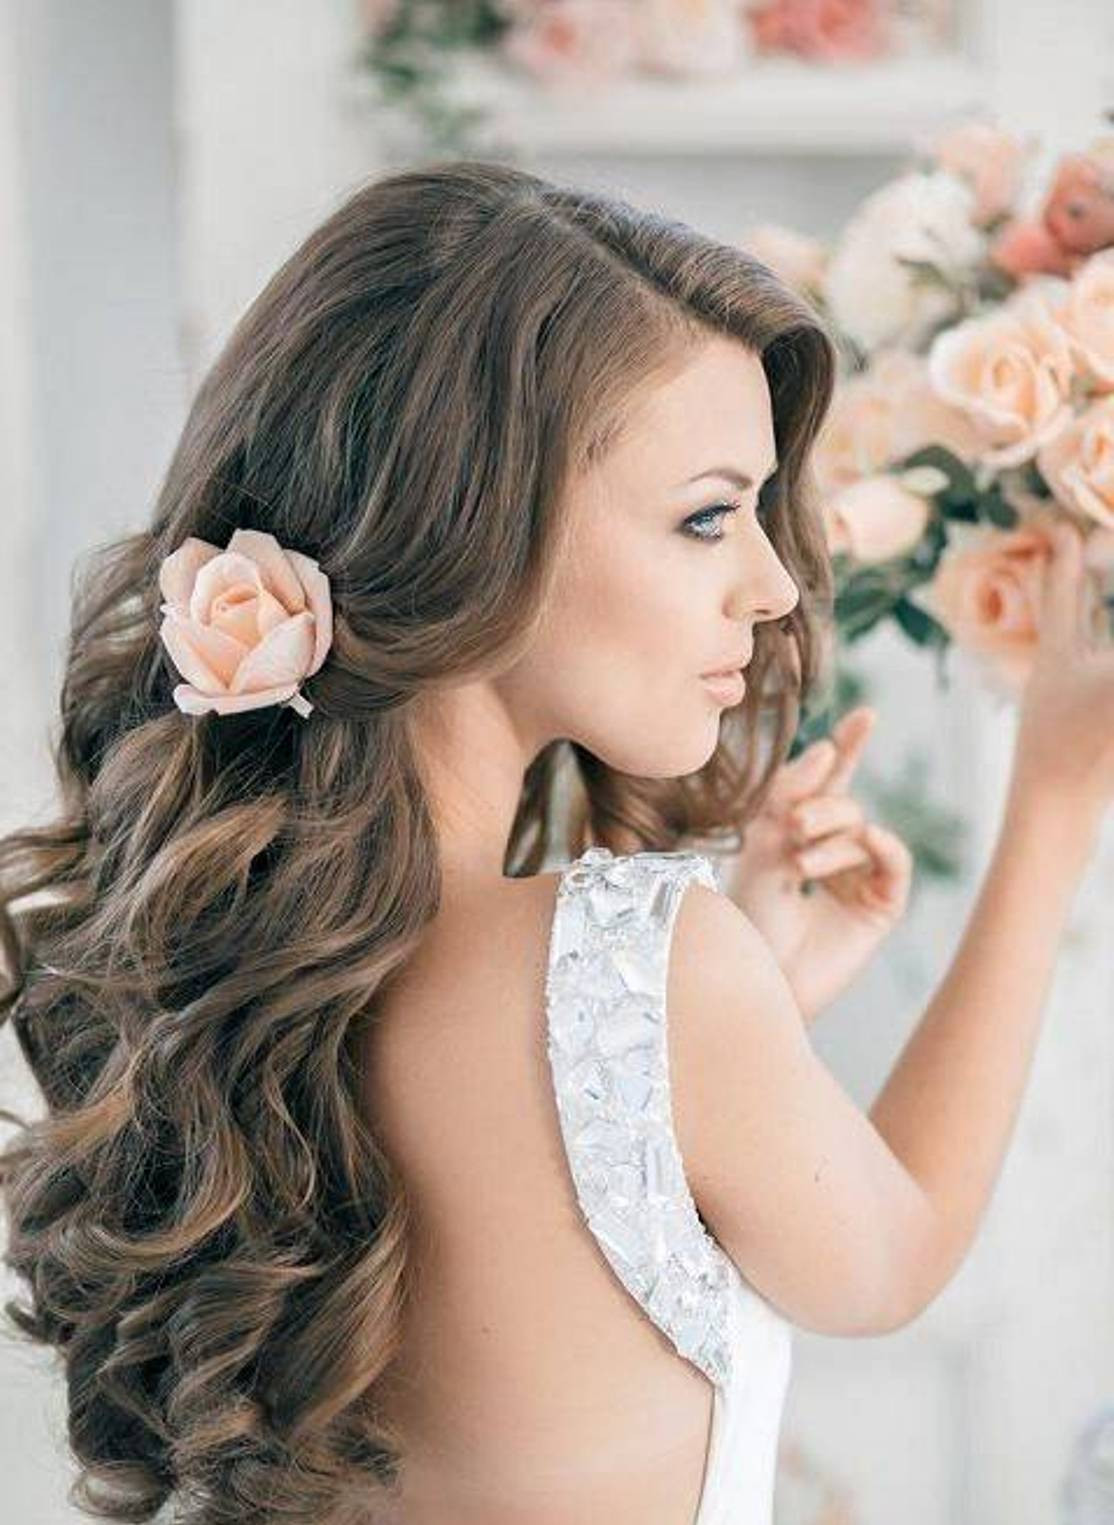 Wedding Hairstyles For Women
 30 Gorgeous Wedding Hairstyles ideas for Women MagMent